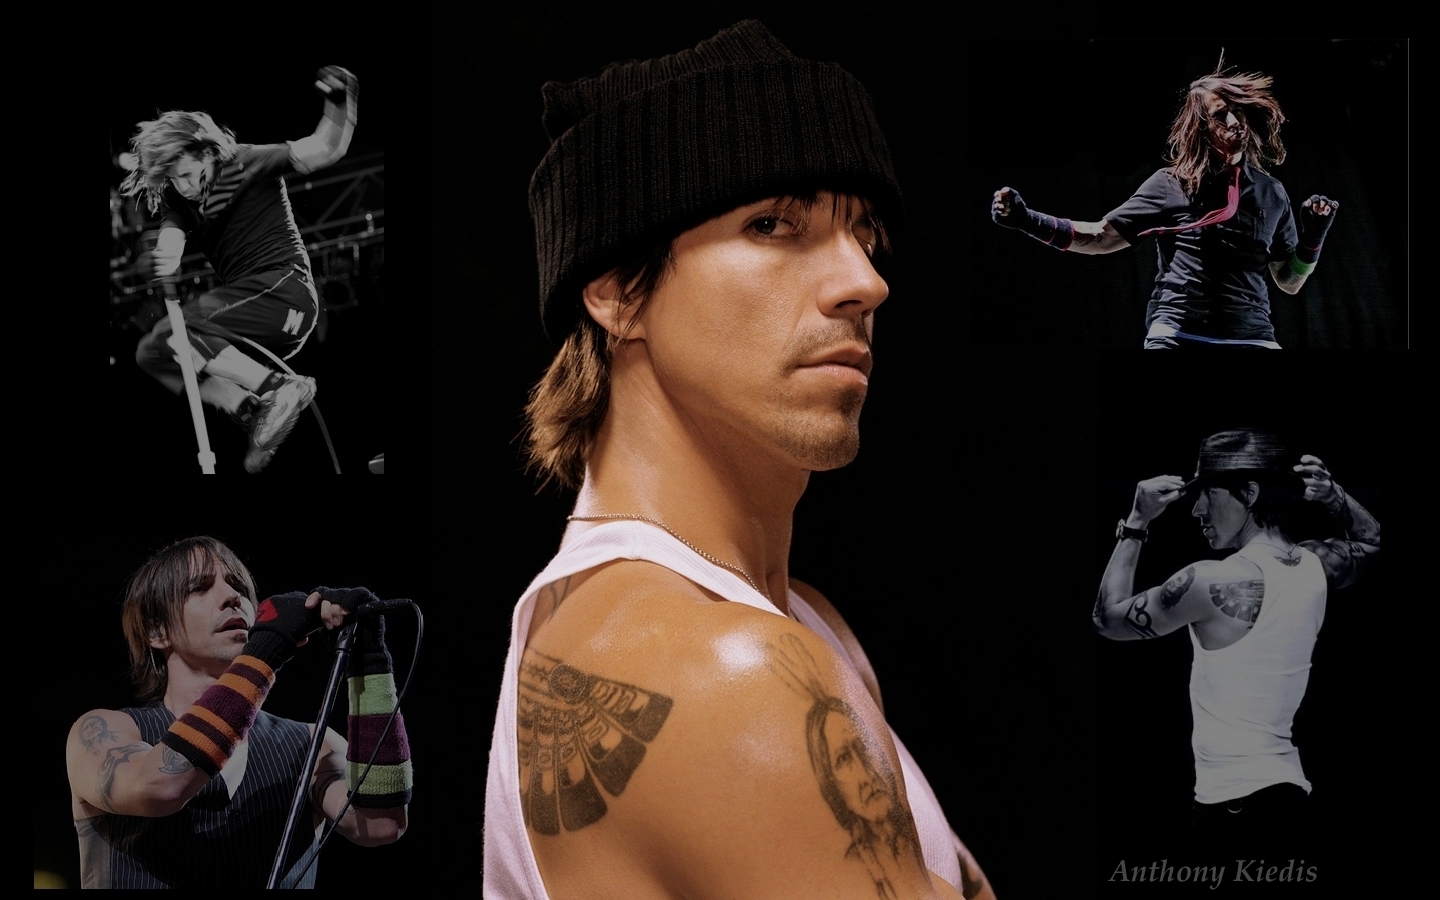 Anthony Kiedis Wallpaper   Anthony Kiedis Wallpaper